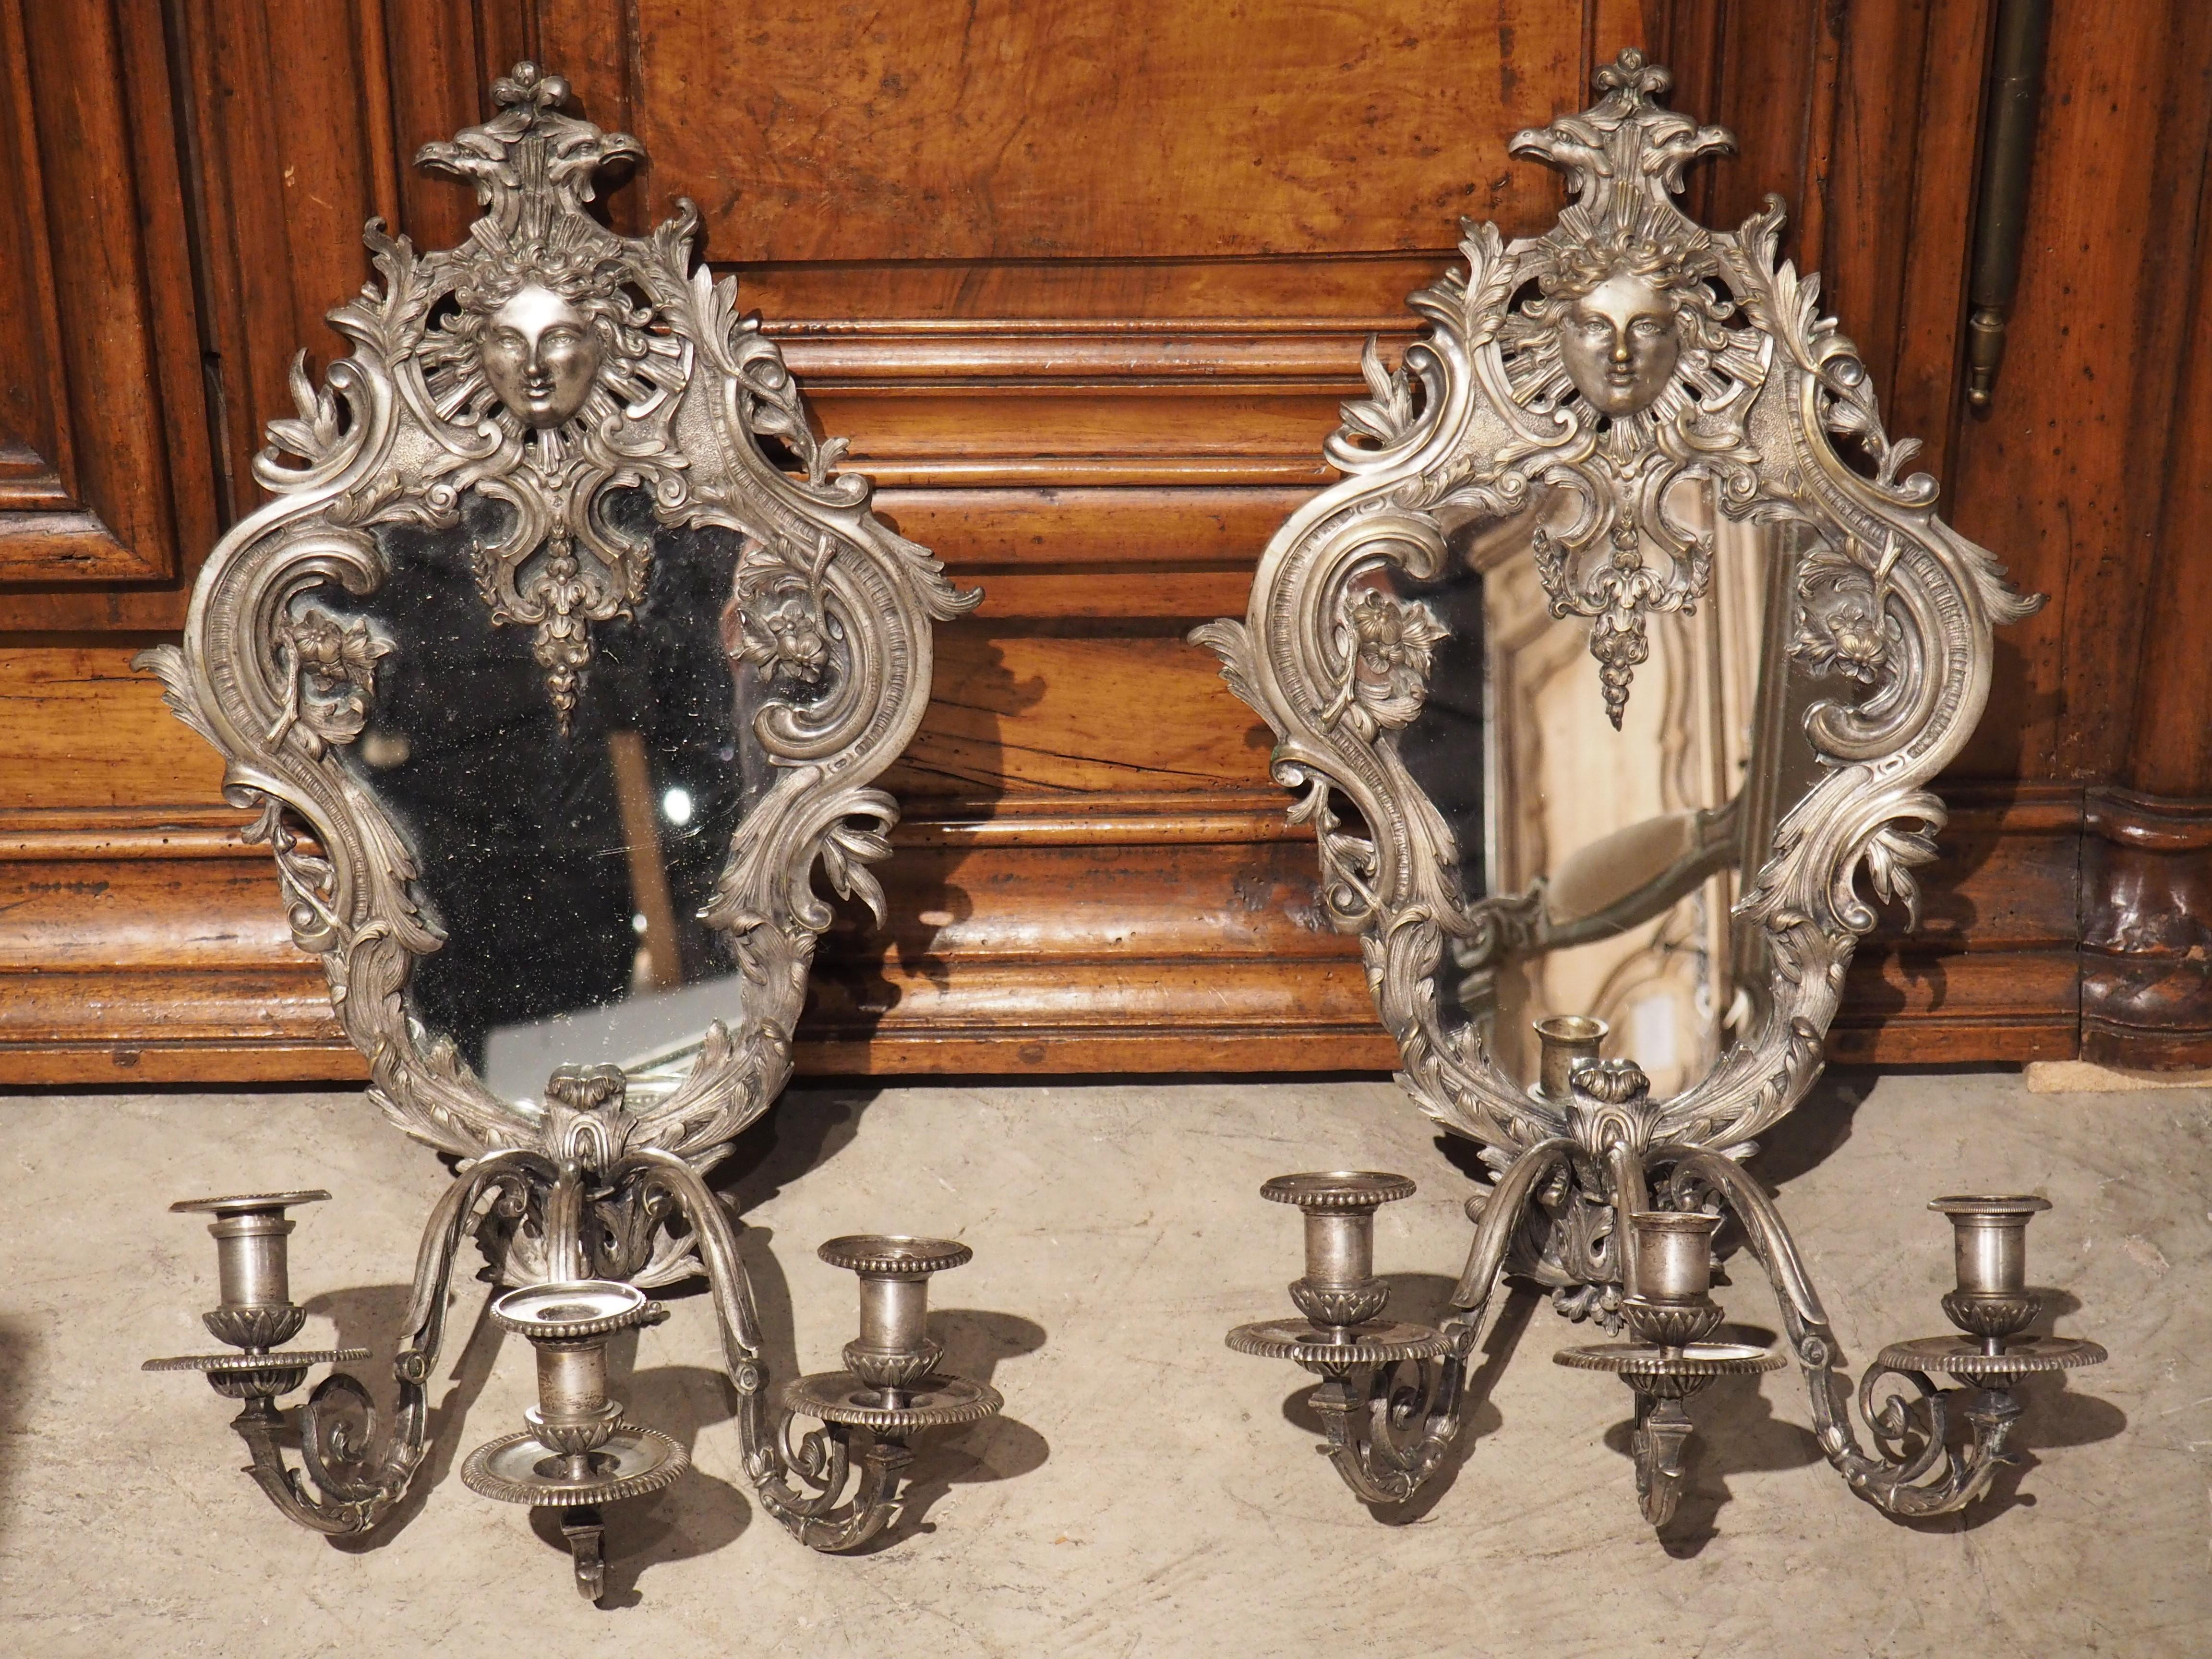 Les meubles d'époque Napoléon III sont généralement très polyvalents, car ils intègrent des éléments des styles précédents, ce qui permet d'associer ces pièces du 